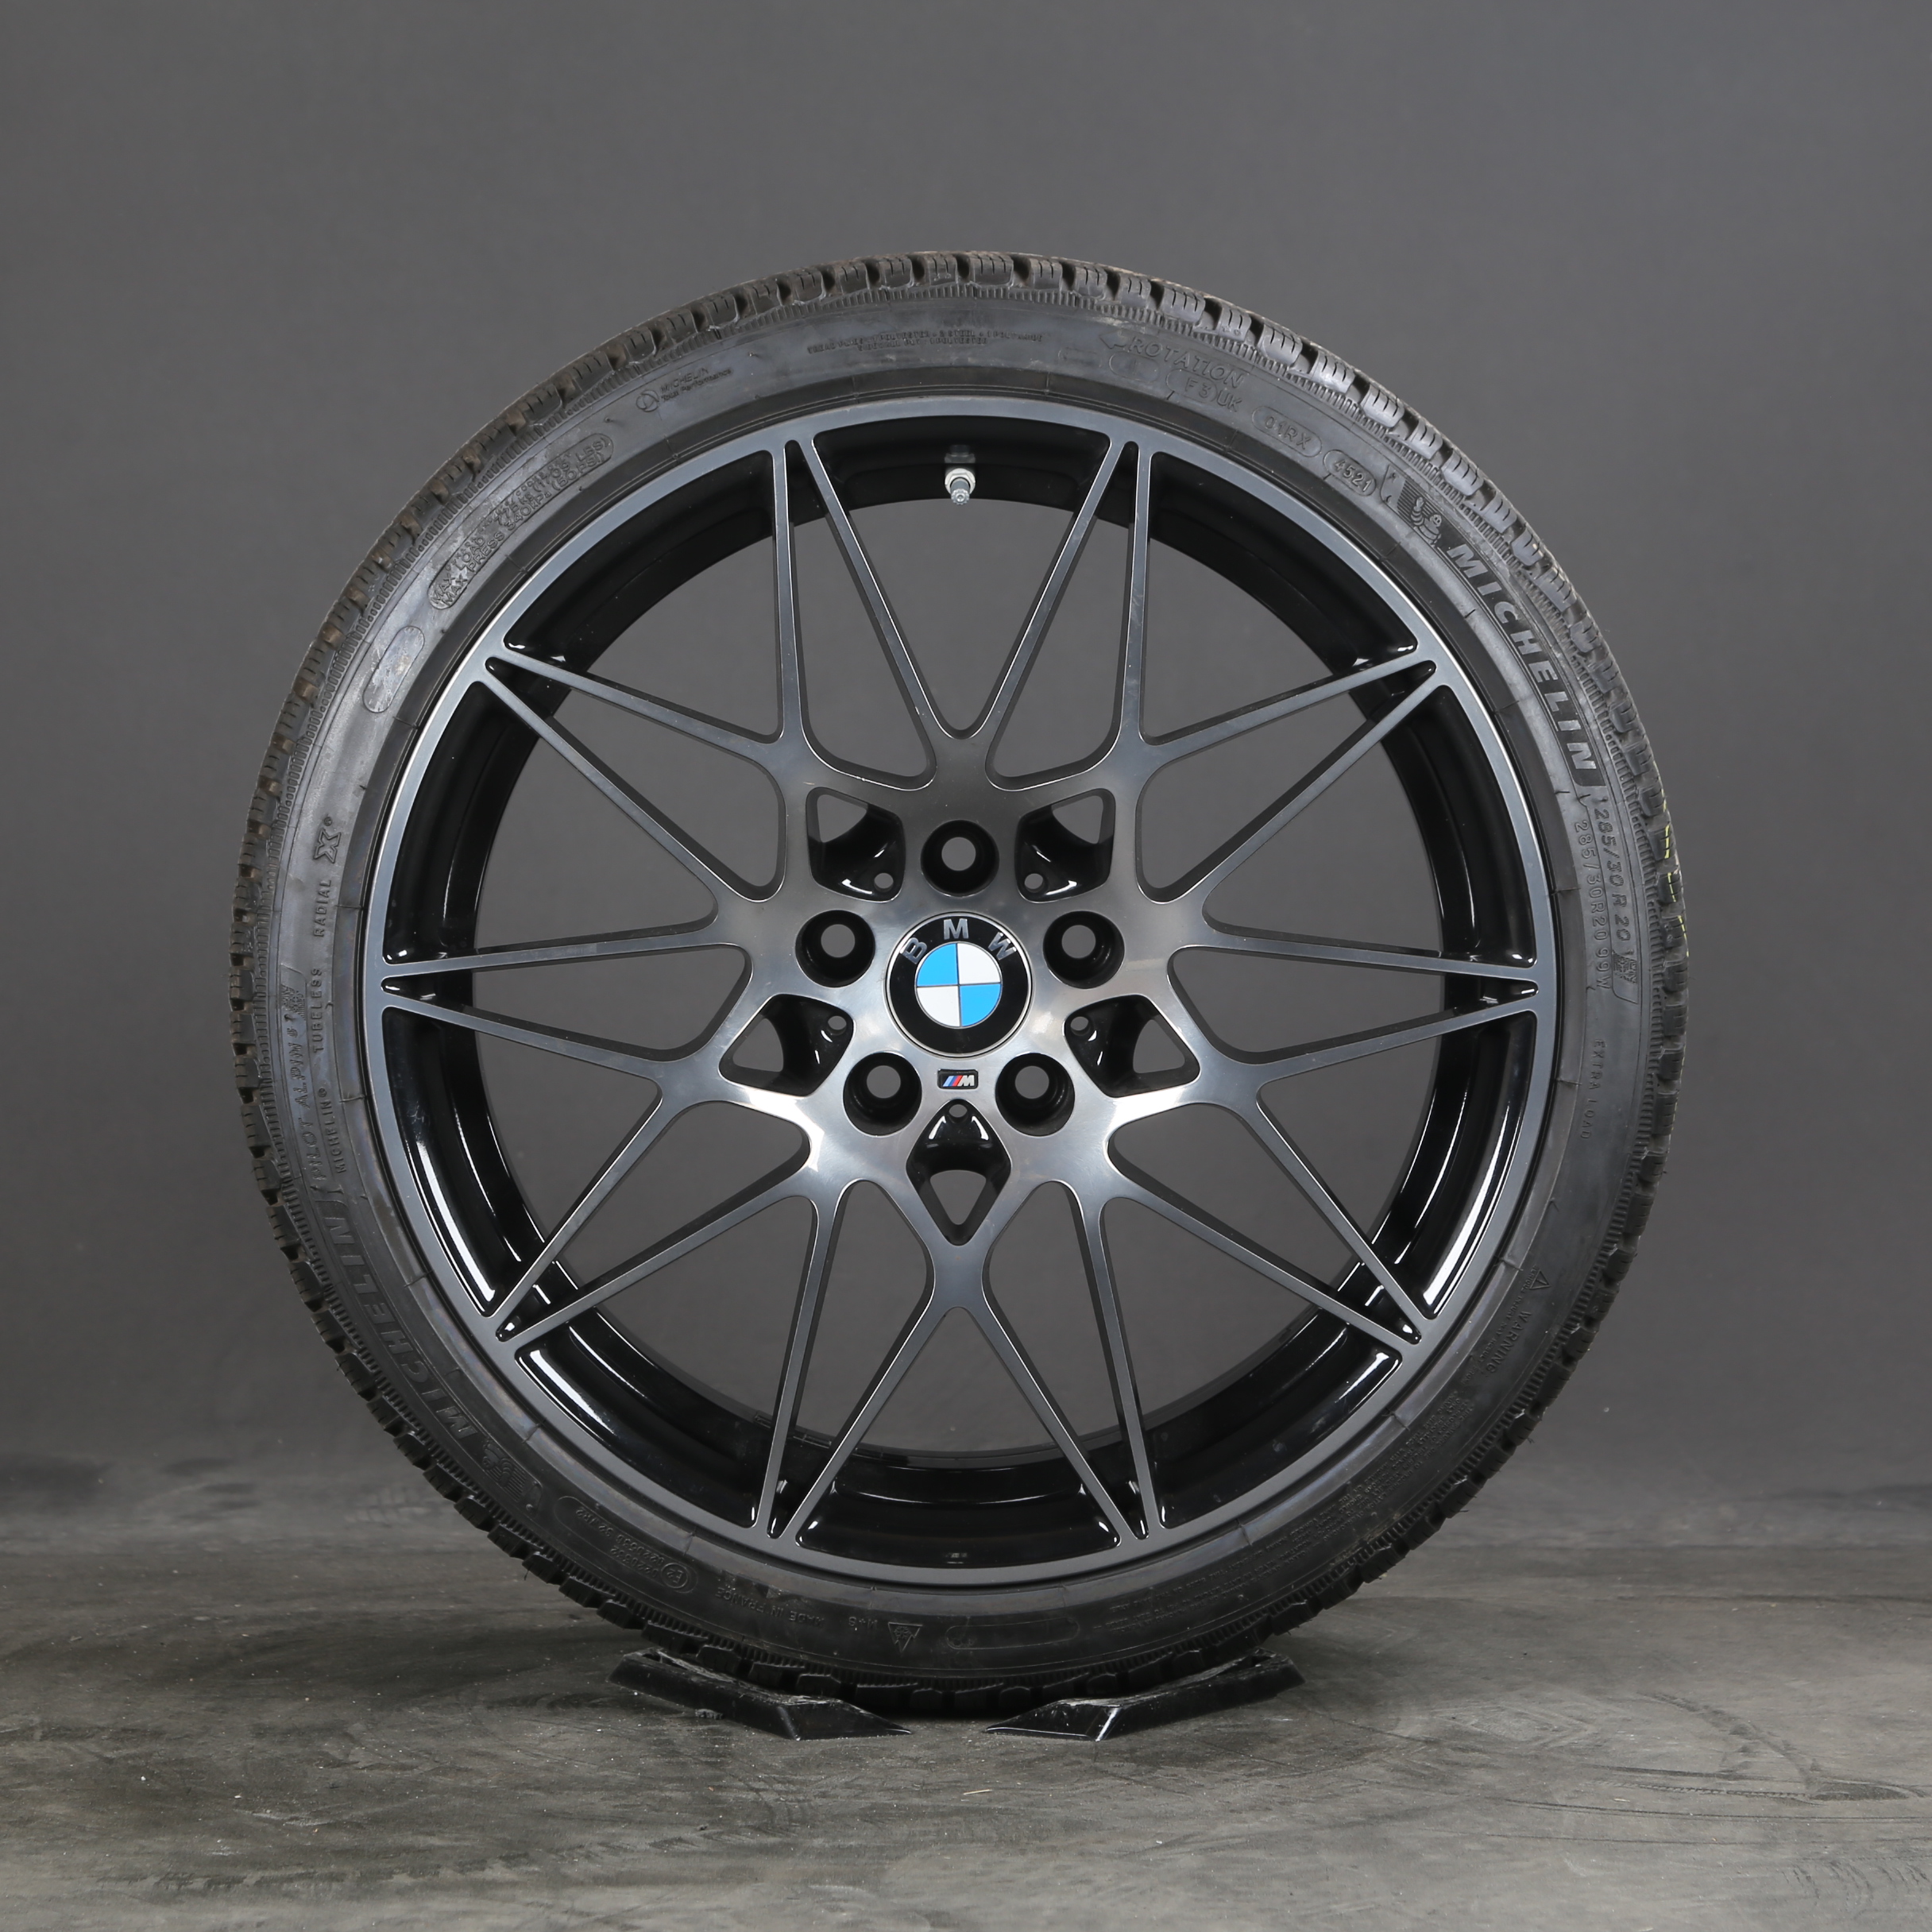 20 pouces roues d'hiver d'origine BMW M3 F80 M4 F82 F83 M666 2287500 pneus d'hiver